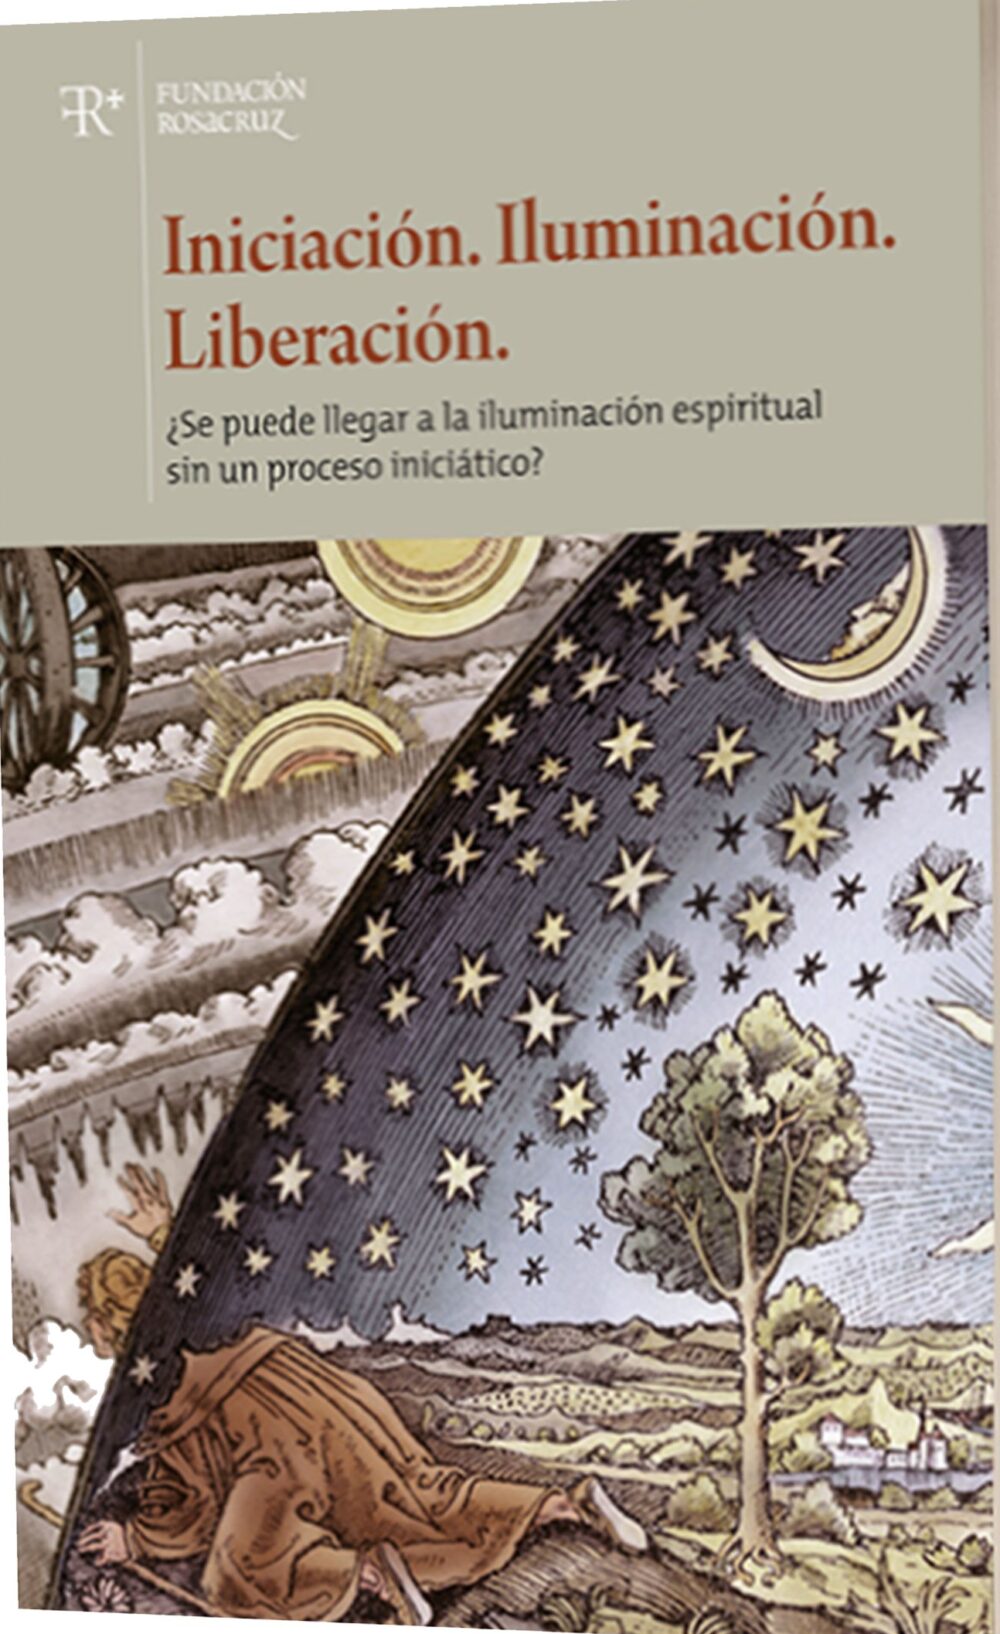 Portada Libro - Iniciacion Iluminacion Liberacion